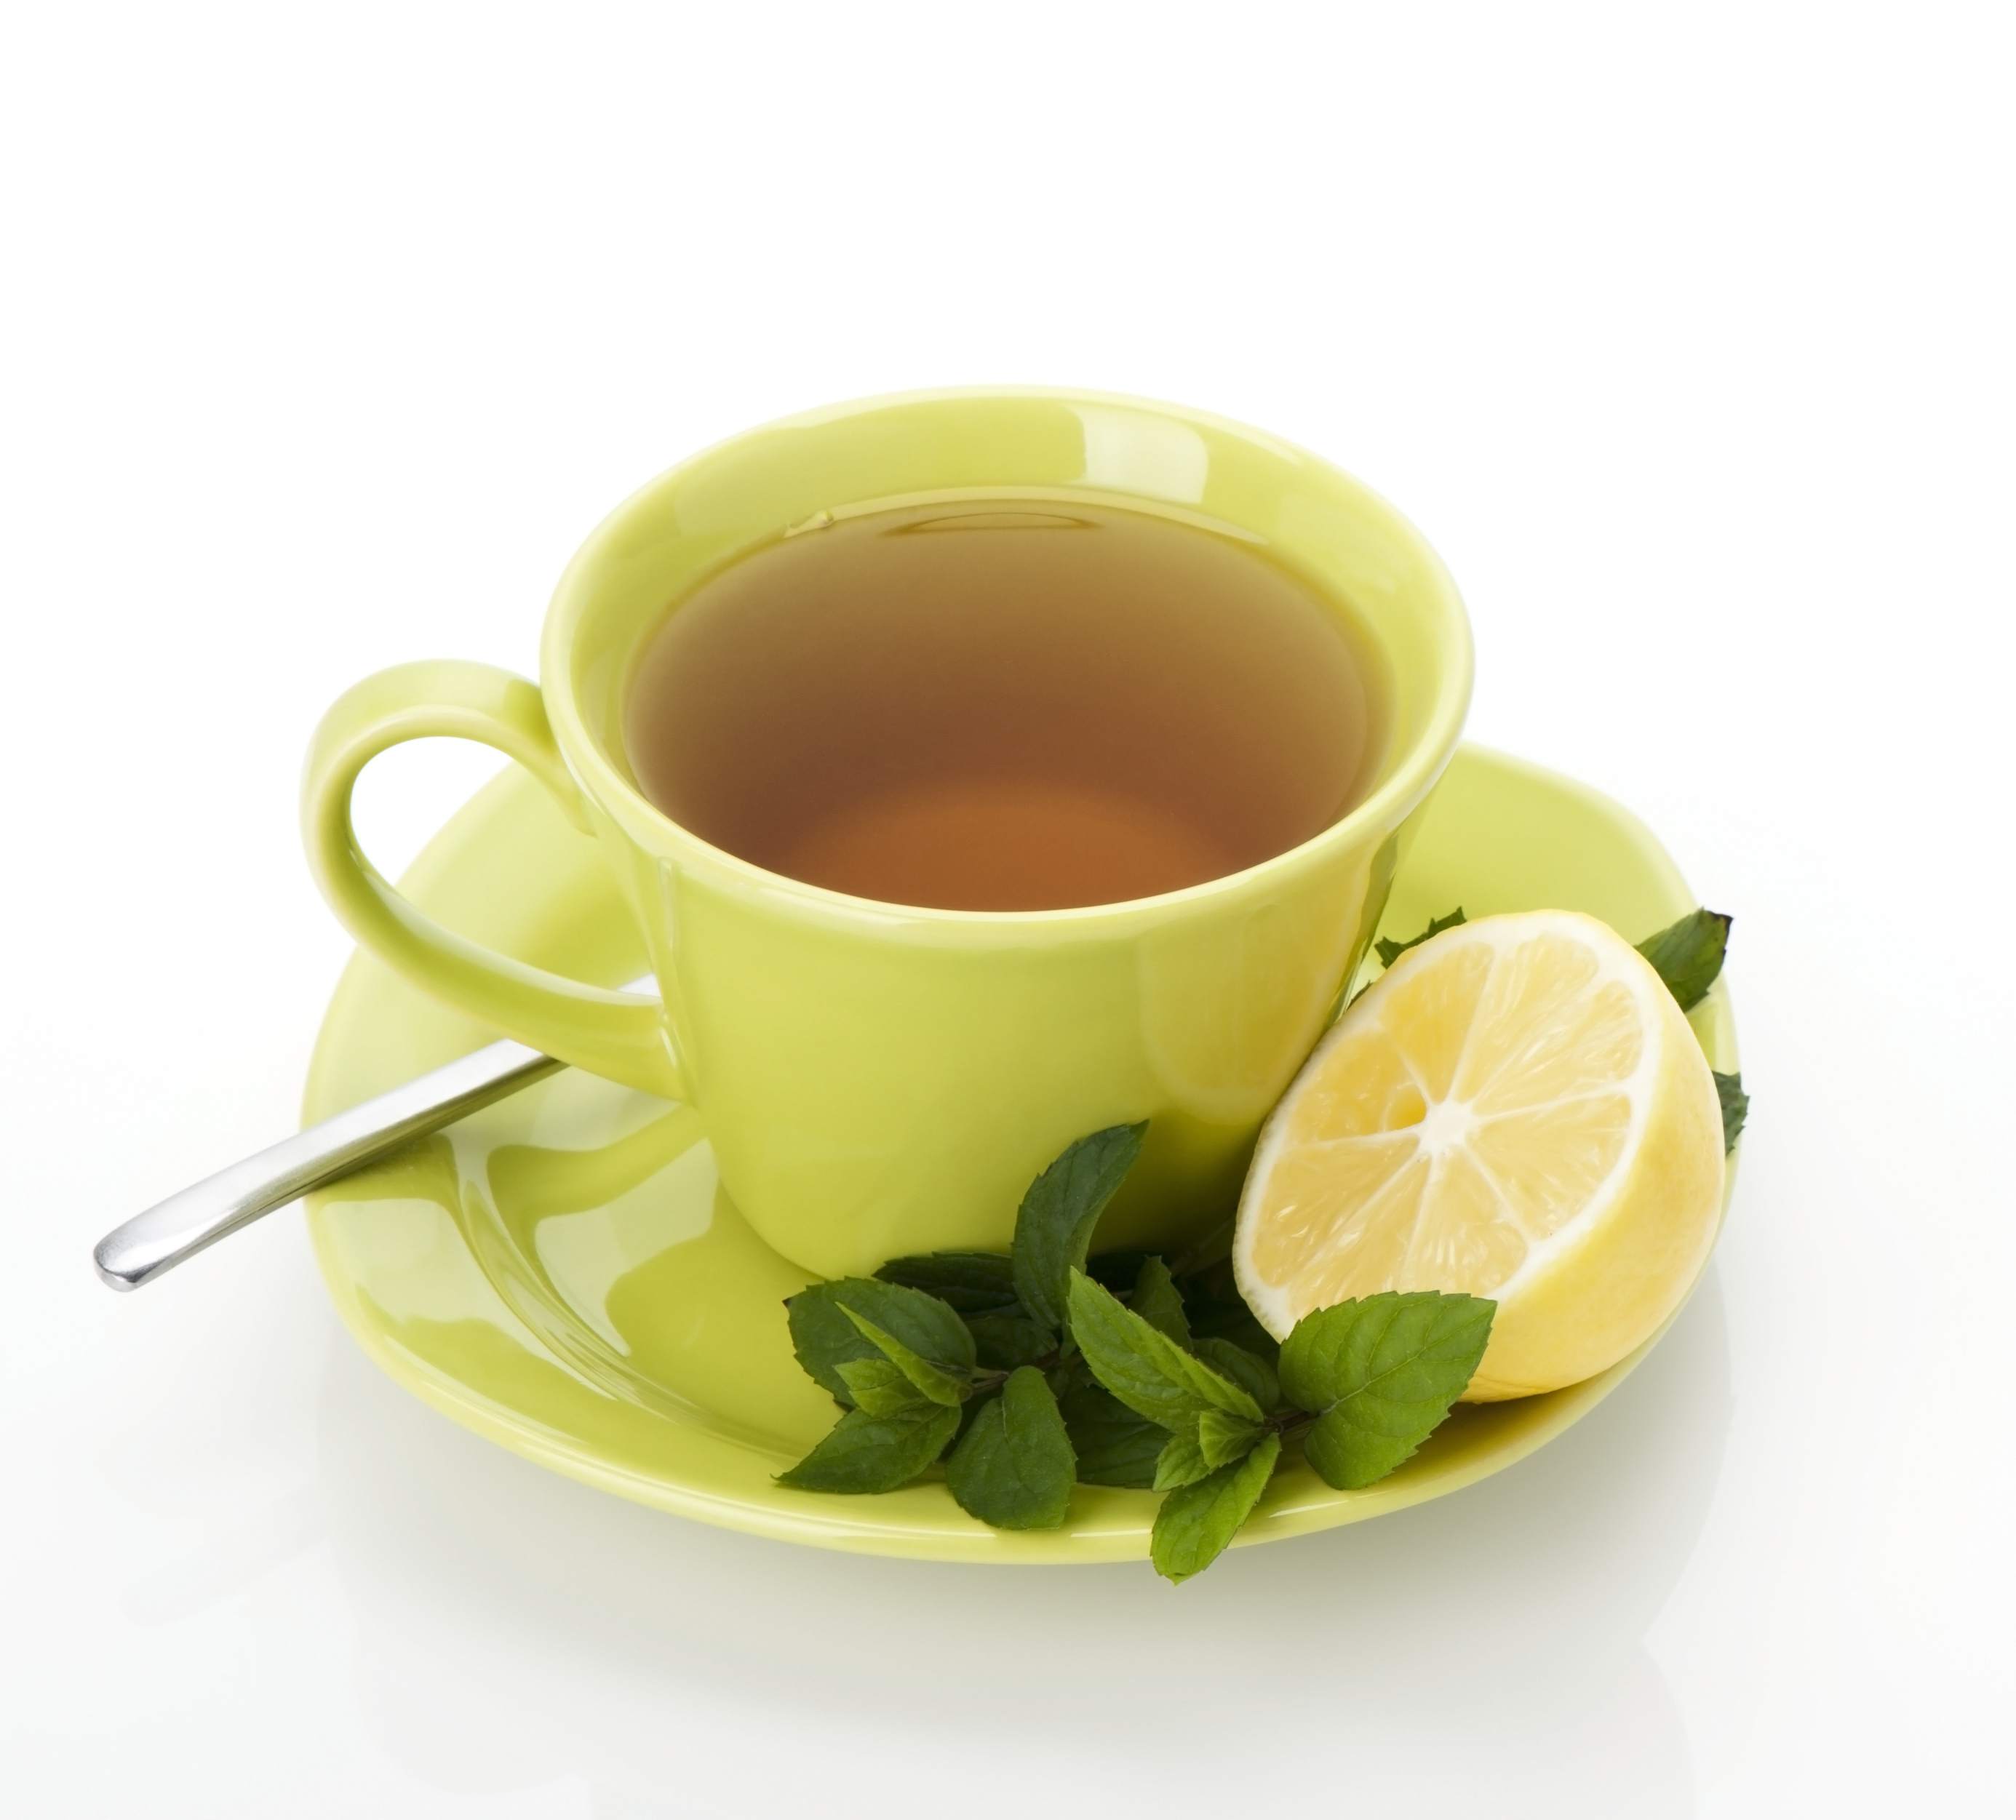 Lemon-Ginger Green Tea Recipe